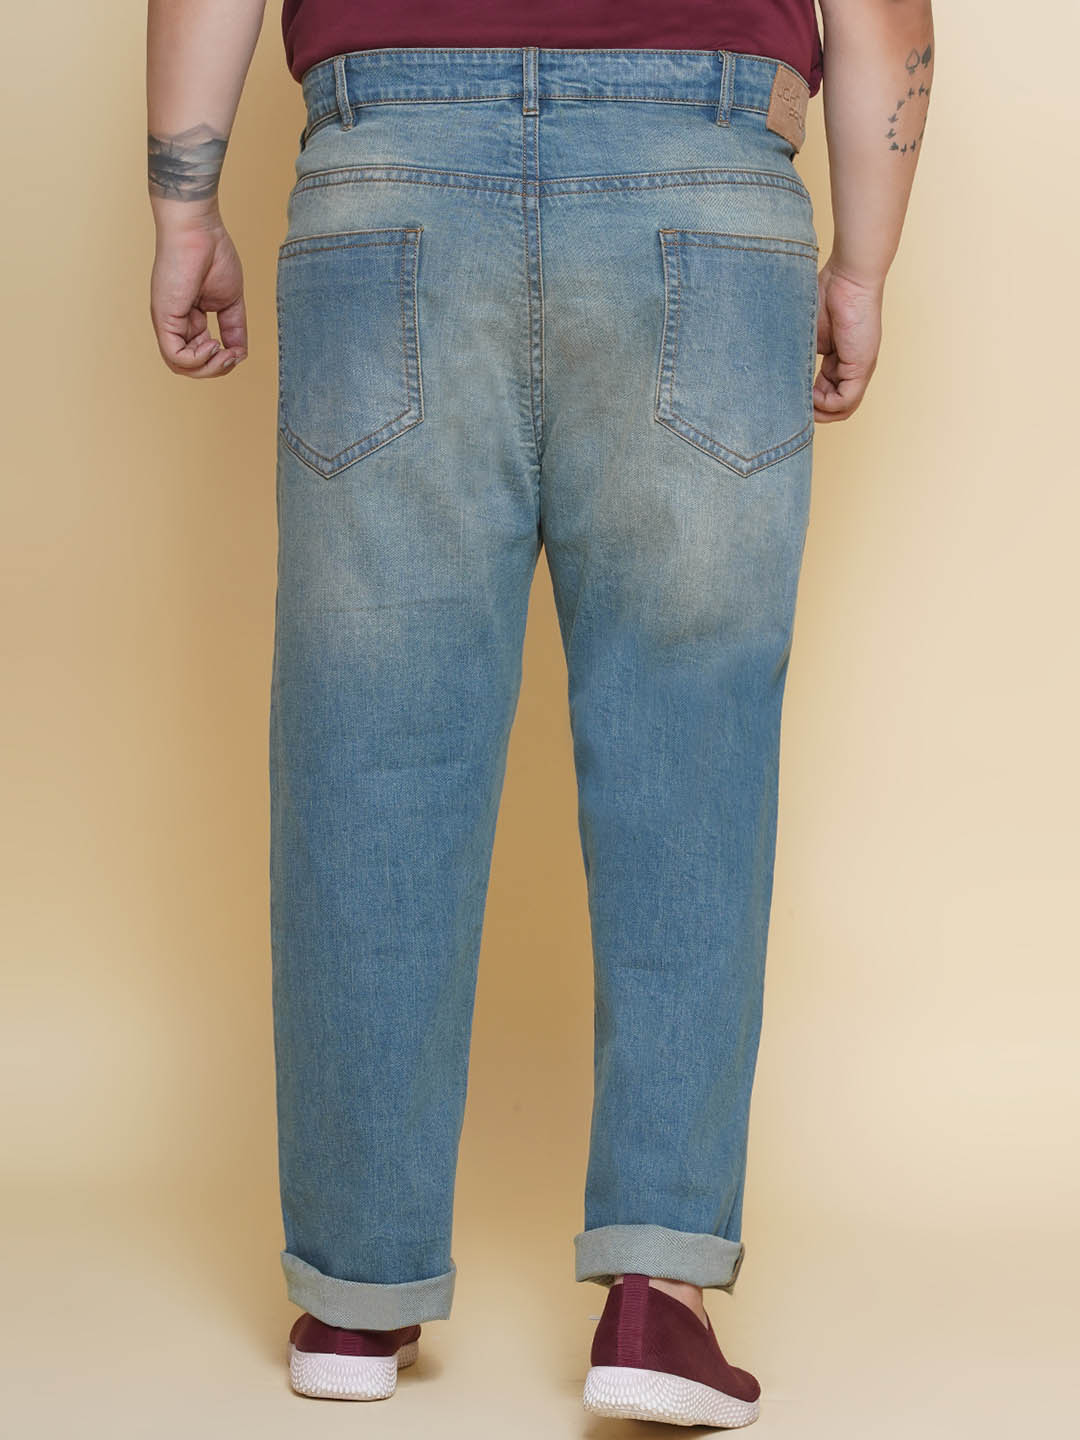 bottomwear/jeans/JPJ12391/jpj12391-5.jpg